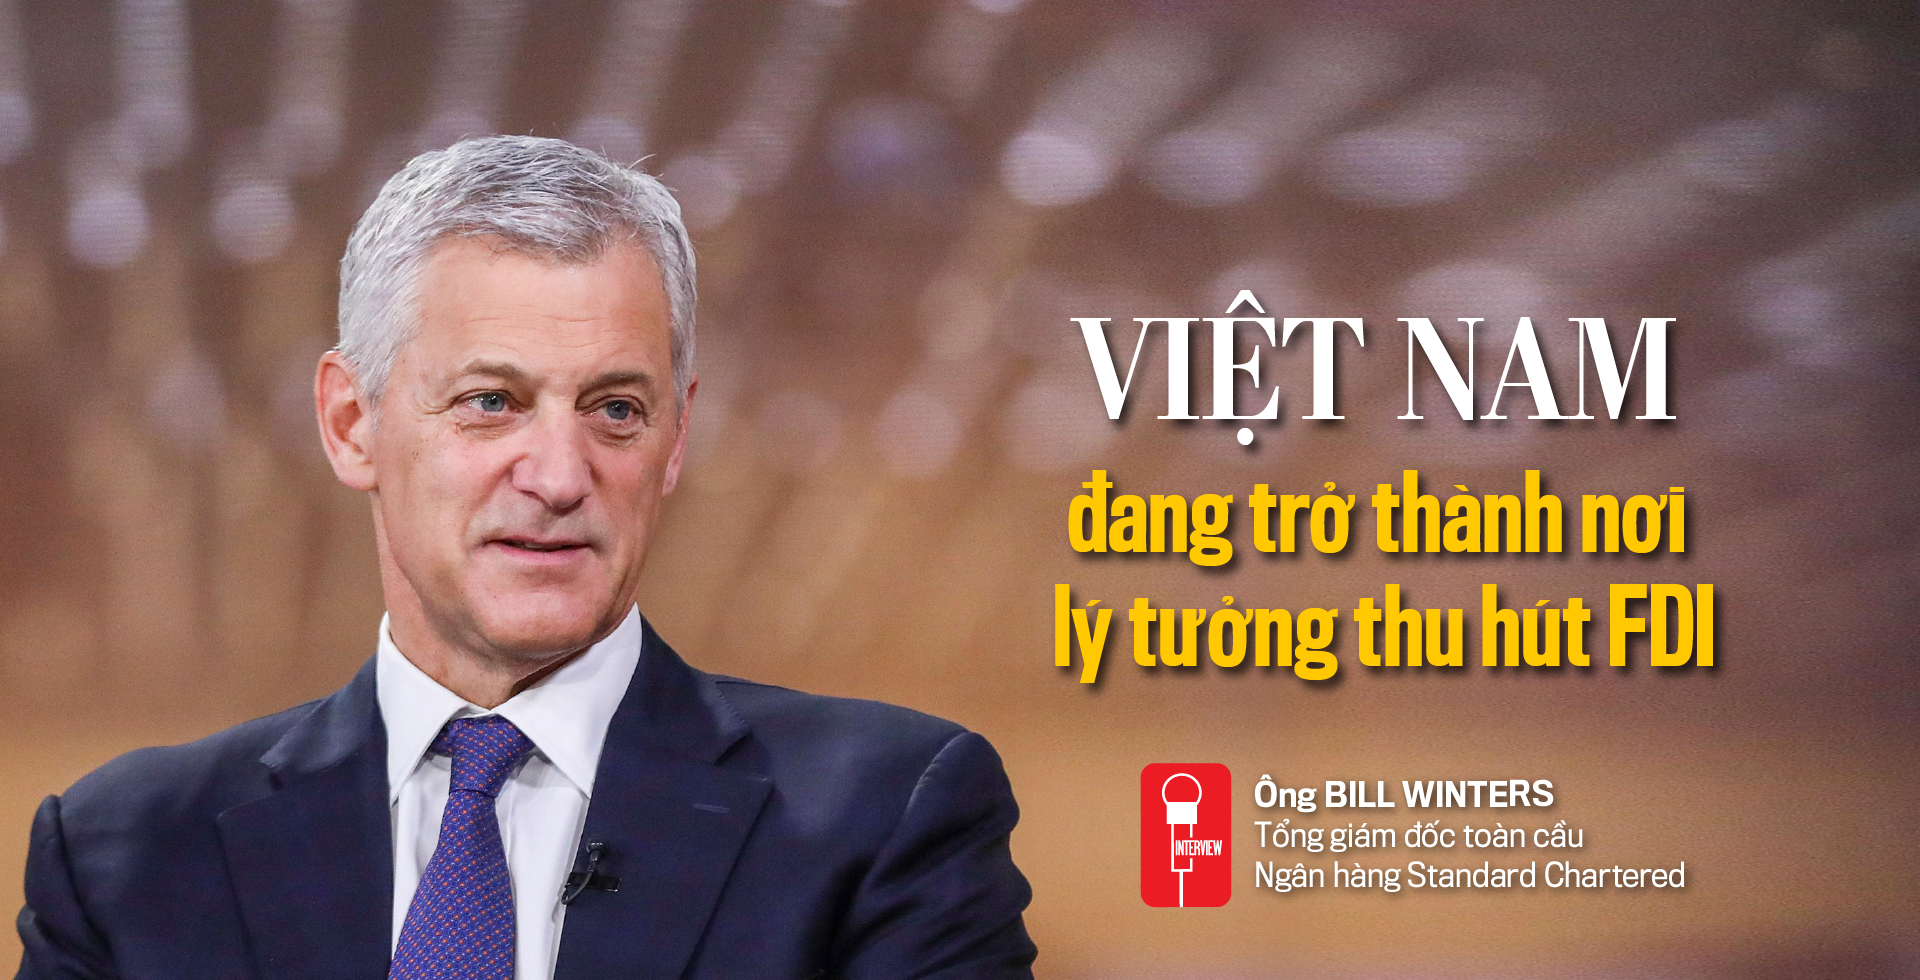 Việt Nam đang trở thành nơi lý tưởng thu hút FDI - Ảnh 1